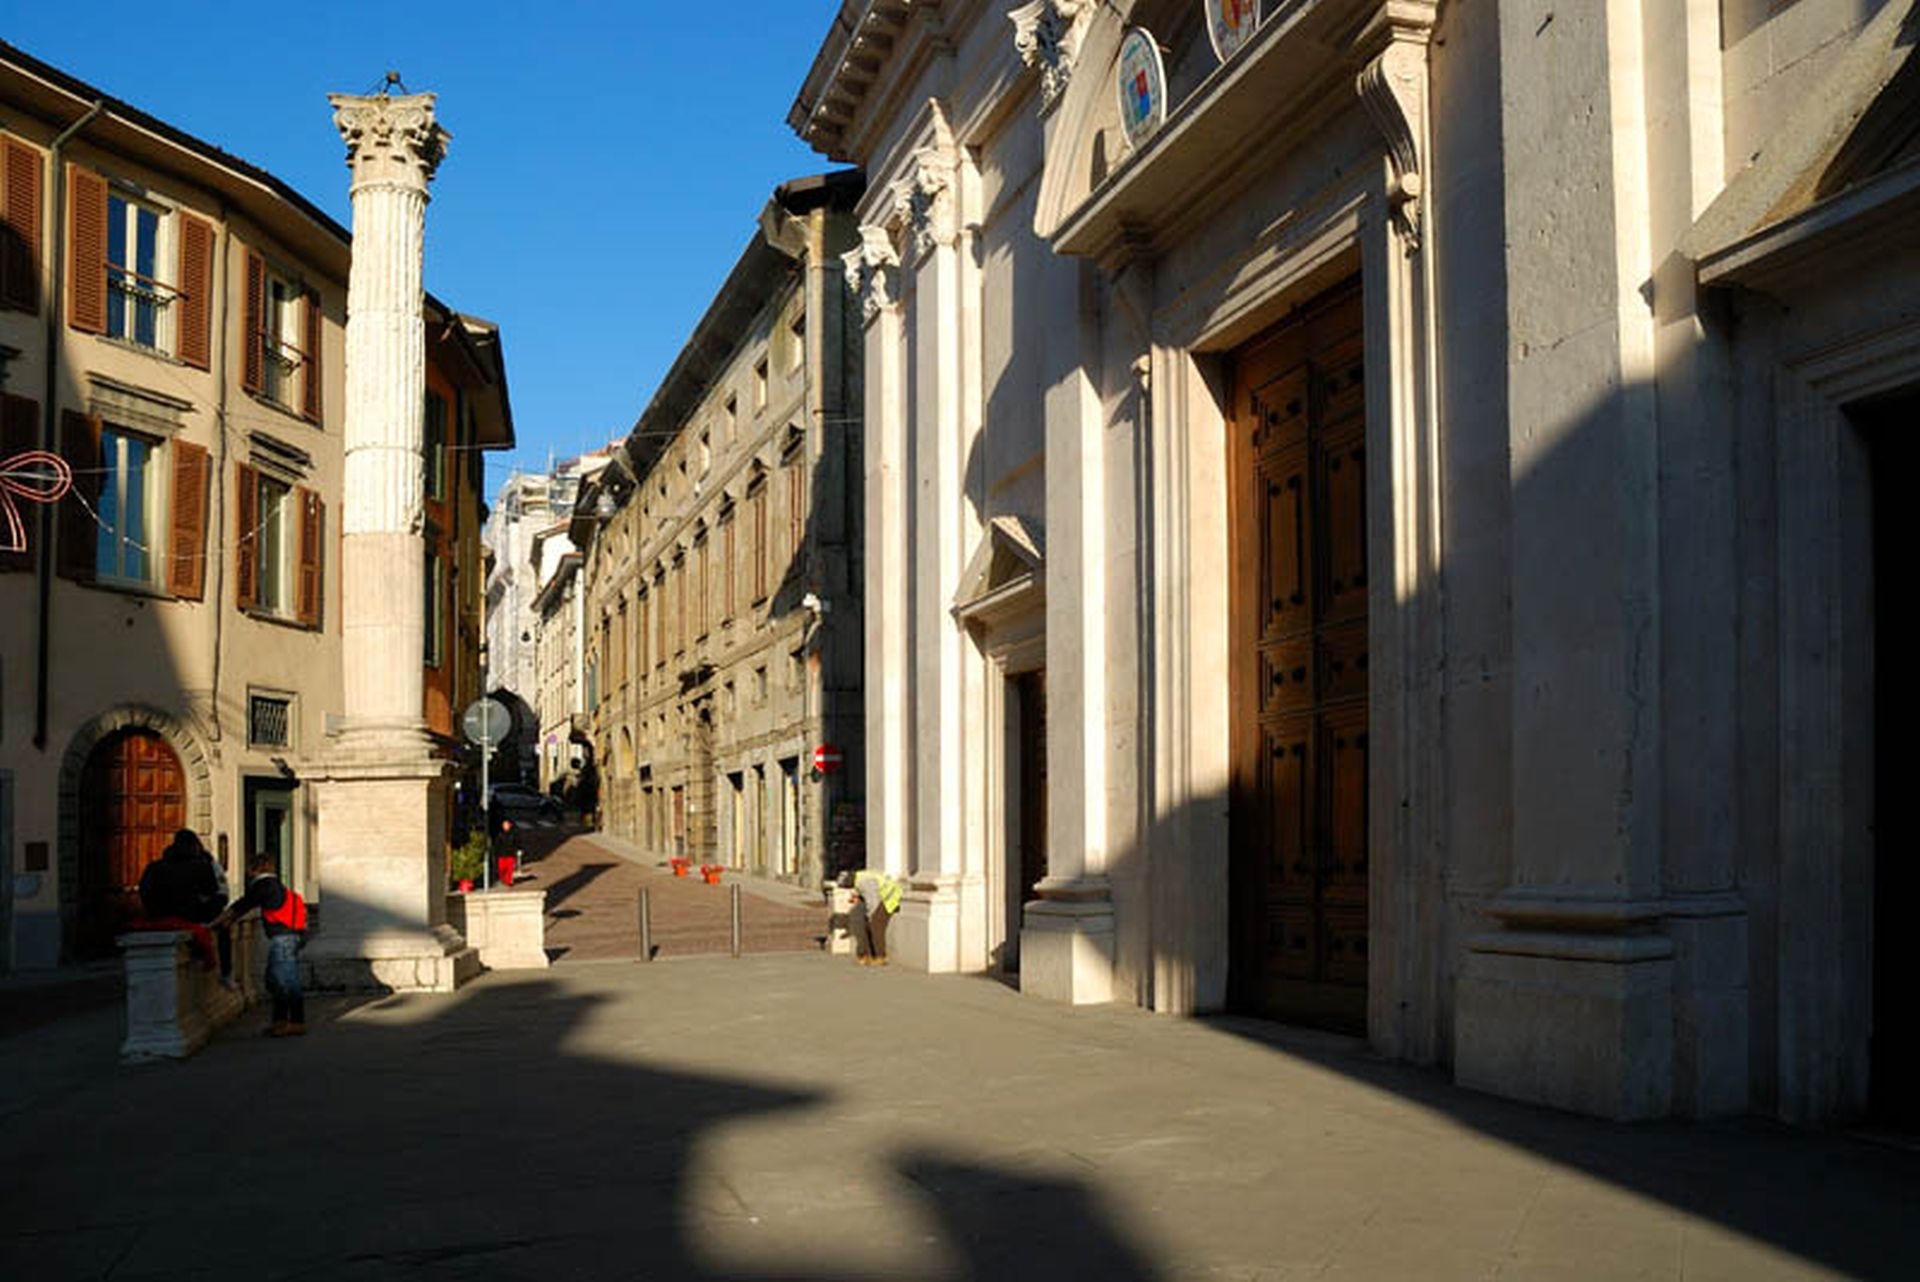 La basilica di Sant'Alessandro in Colonna